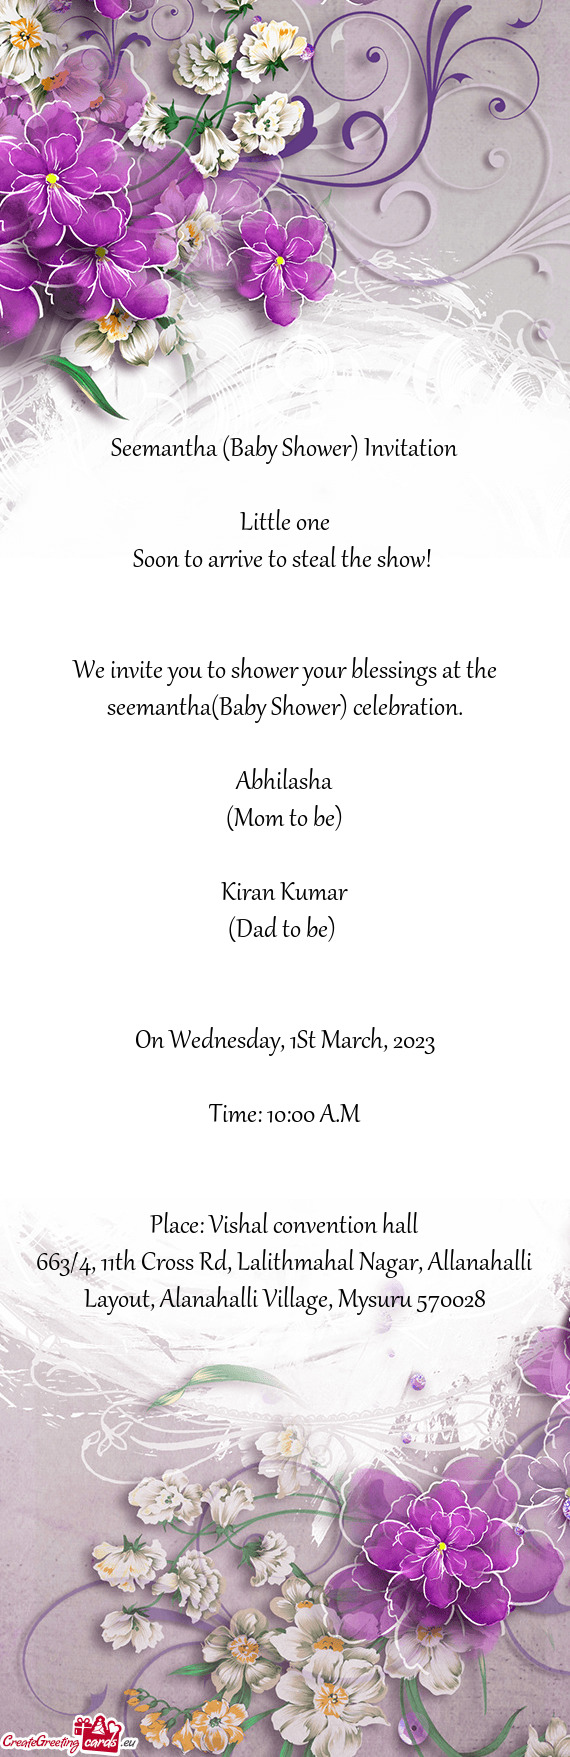 Seemantha (Baby Shower) Invitation